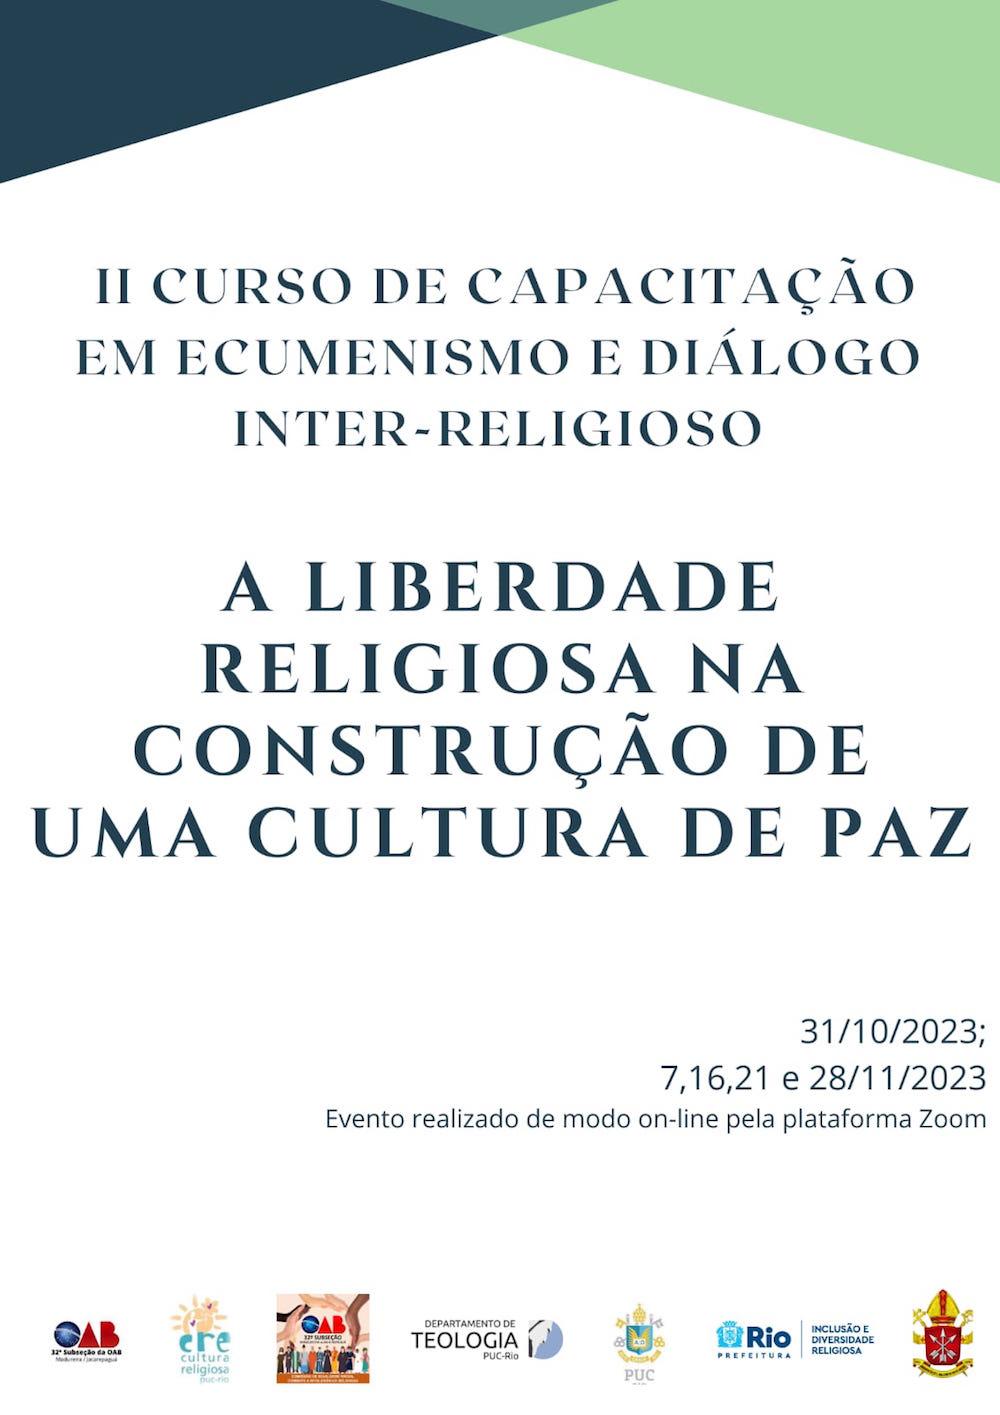 II Curso de Capacitação em Ecumenismo e Diálogo Inter-Religioso.